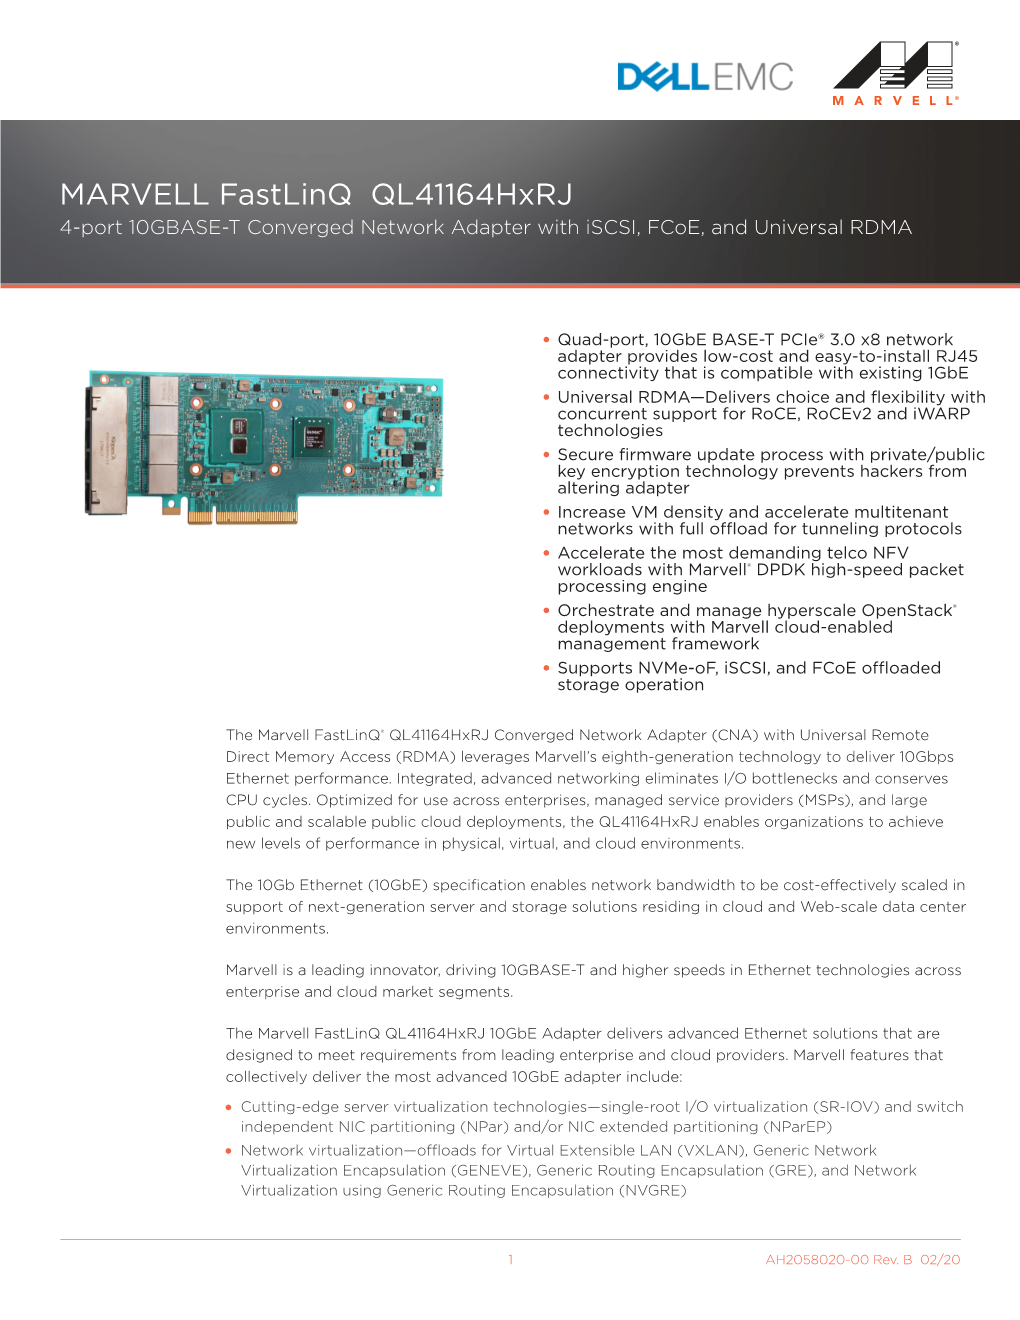 Product Brief: MARVELL Fastlinq Ql41164hxrj